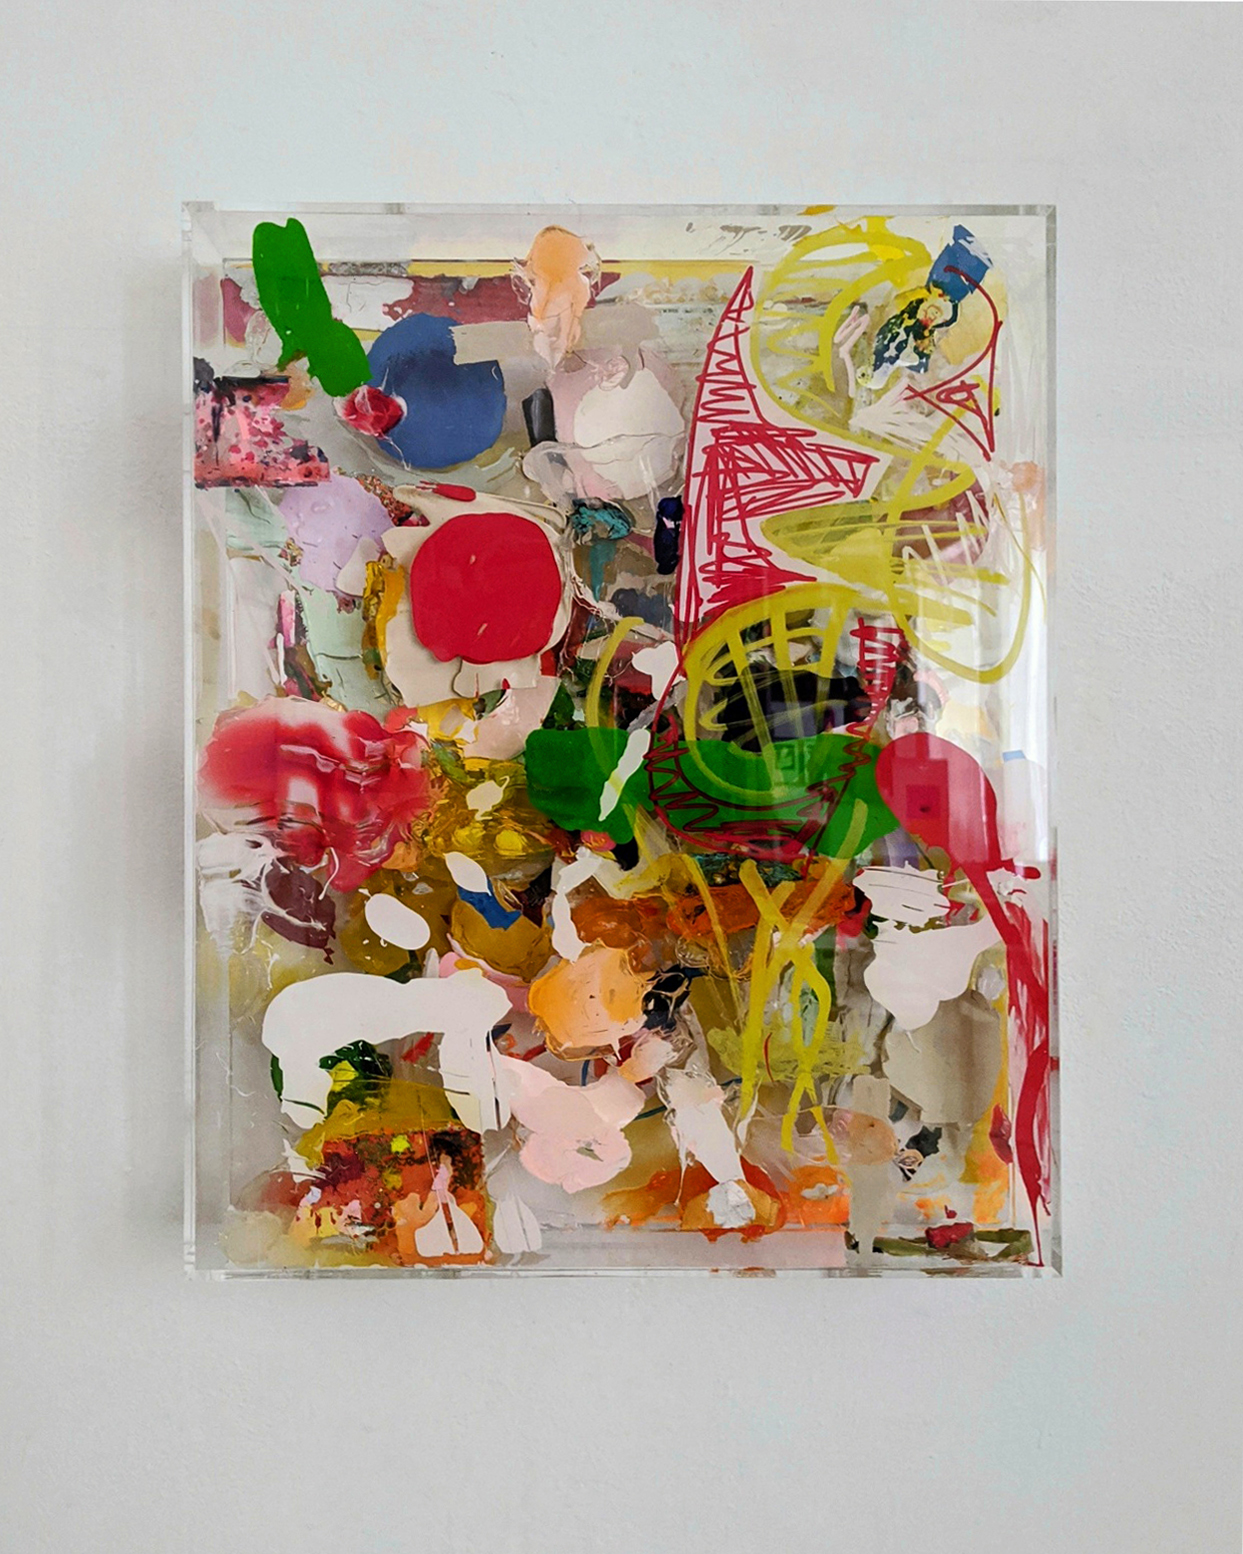 "Farbsalat", 52x42x9 cm, Acryl, Holz, Plexi, 2020